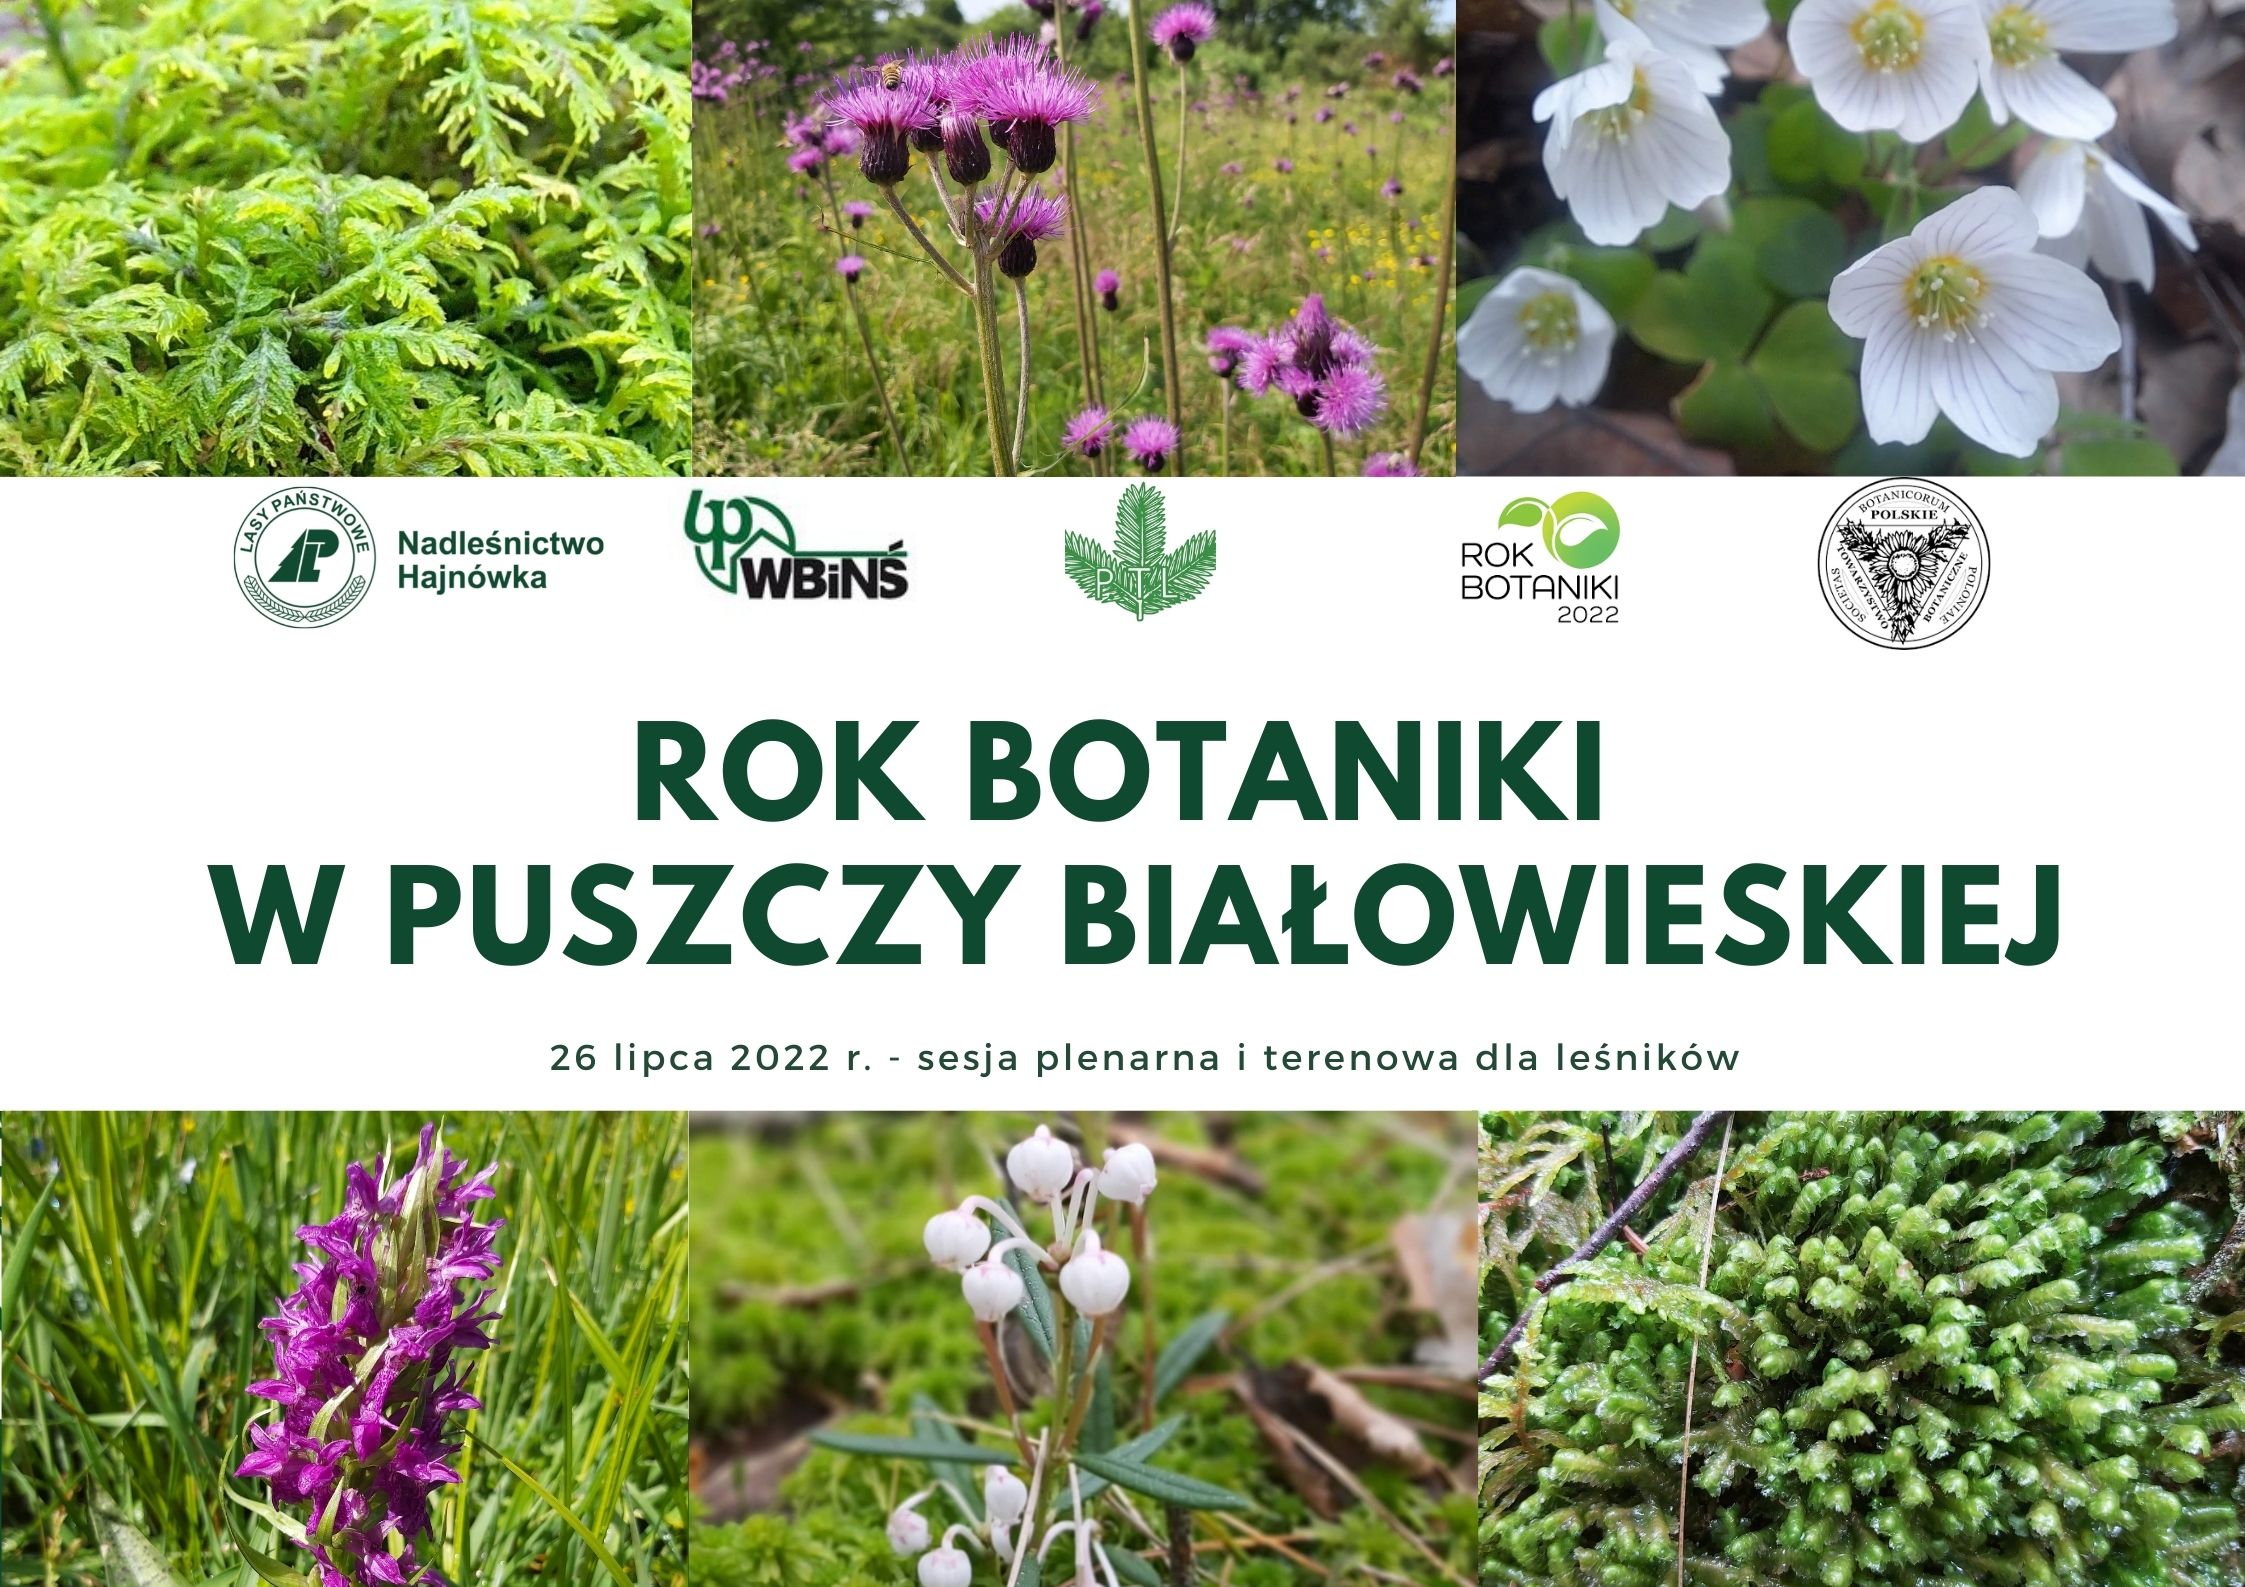 Rok Botaniki w Puszczy Białowieskiej